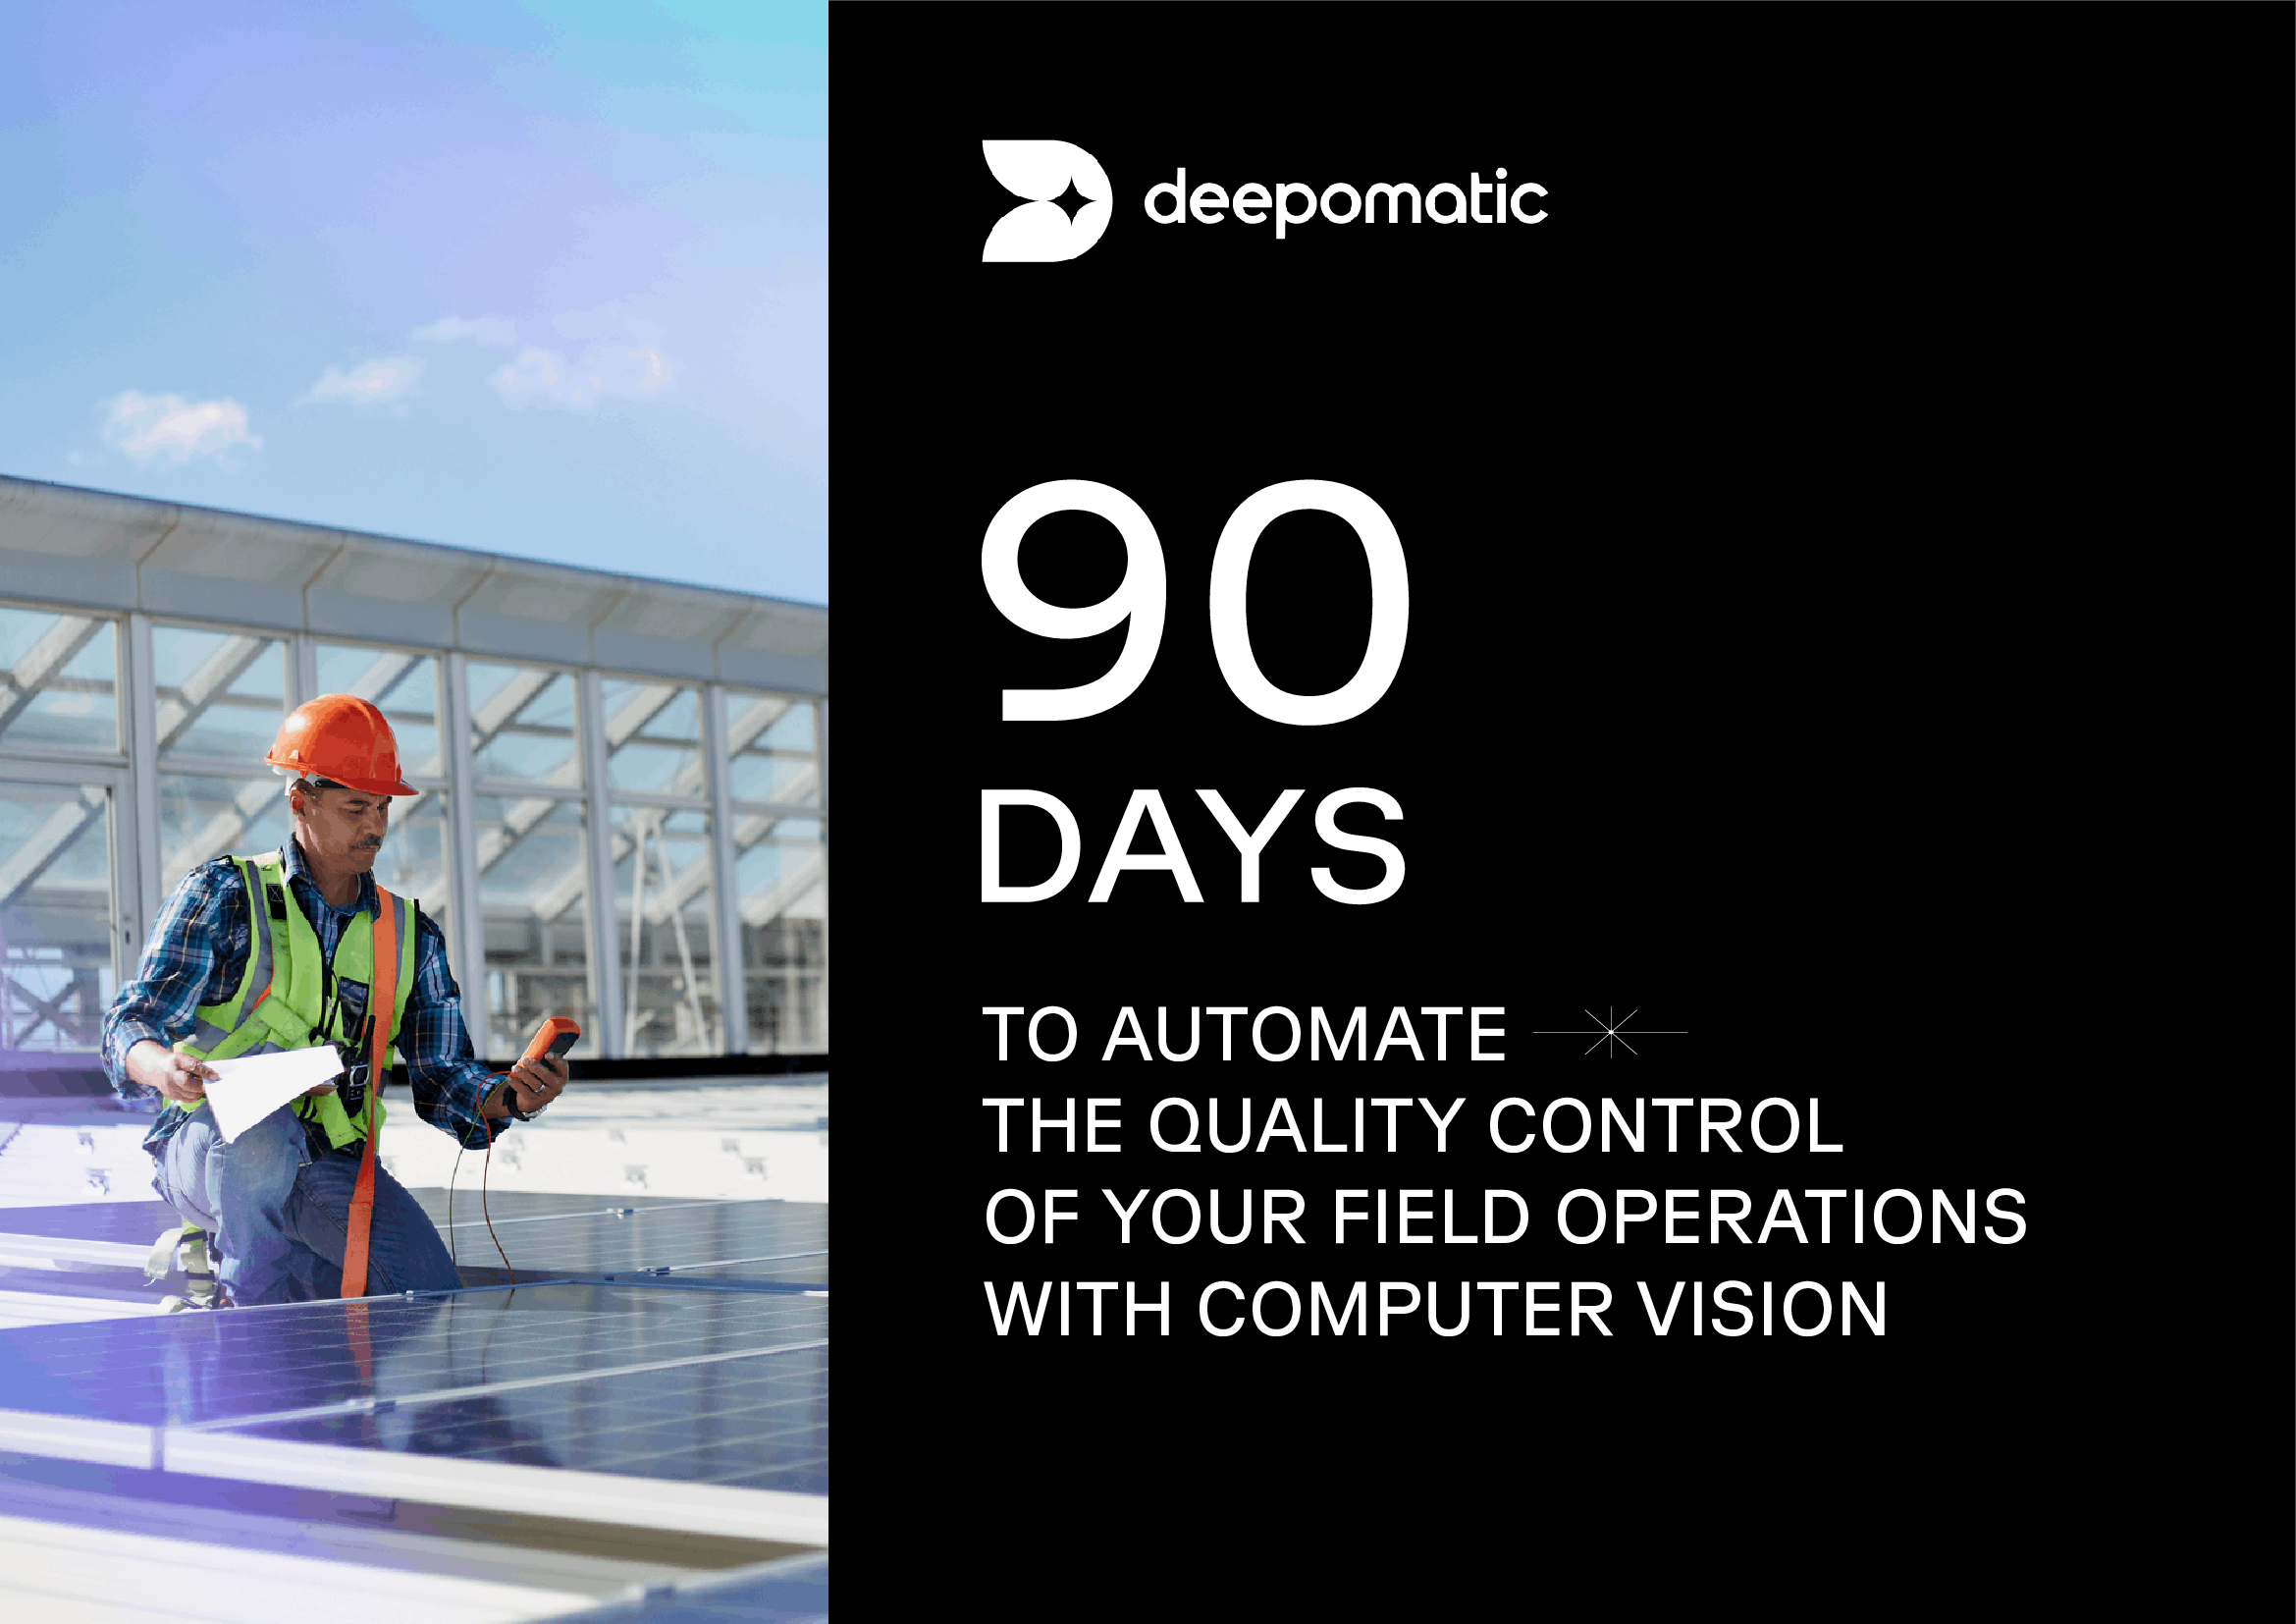 90 Tage für die Automatisierung der Qualitätskontrolle mit Hilfe von Computer Vision, Umschlag des Leitfadens